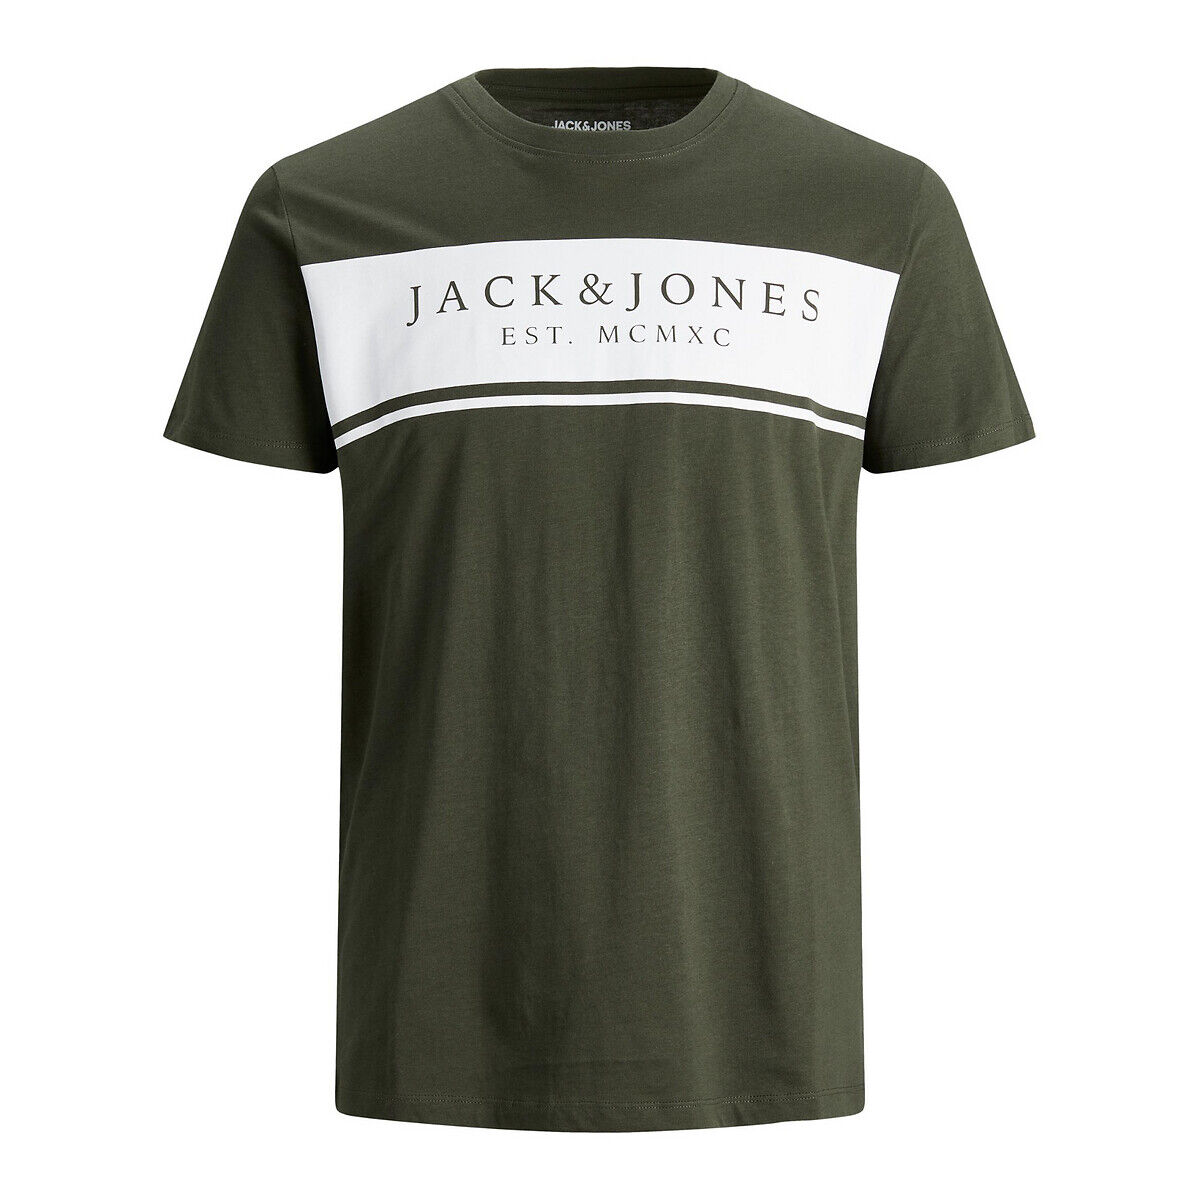 JACK & JONES T-Shirt River, runder Ausschnitt SCHWARZ;GRAU;WEISS;GRÜN